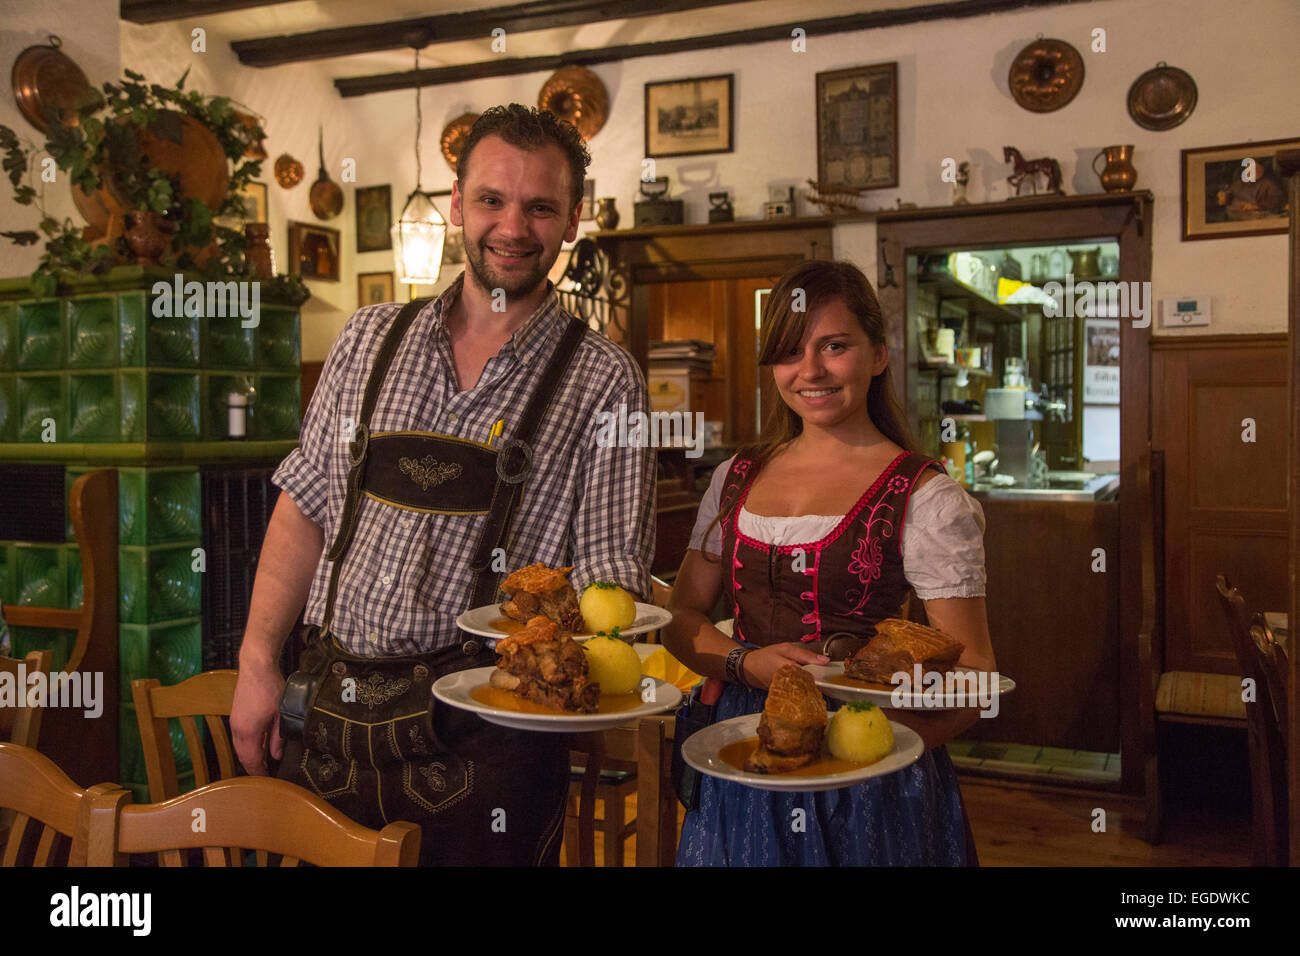 Serveur et serveuse sympa les assiettes de service avec des boulettes de porc, en Schaeufele Herrenkeller restaurant de Boehm, Nuremberg, Franconia, Bavaria, Germany Banque D'Images